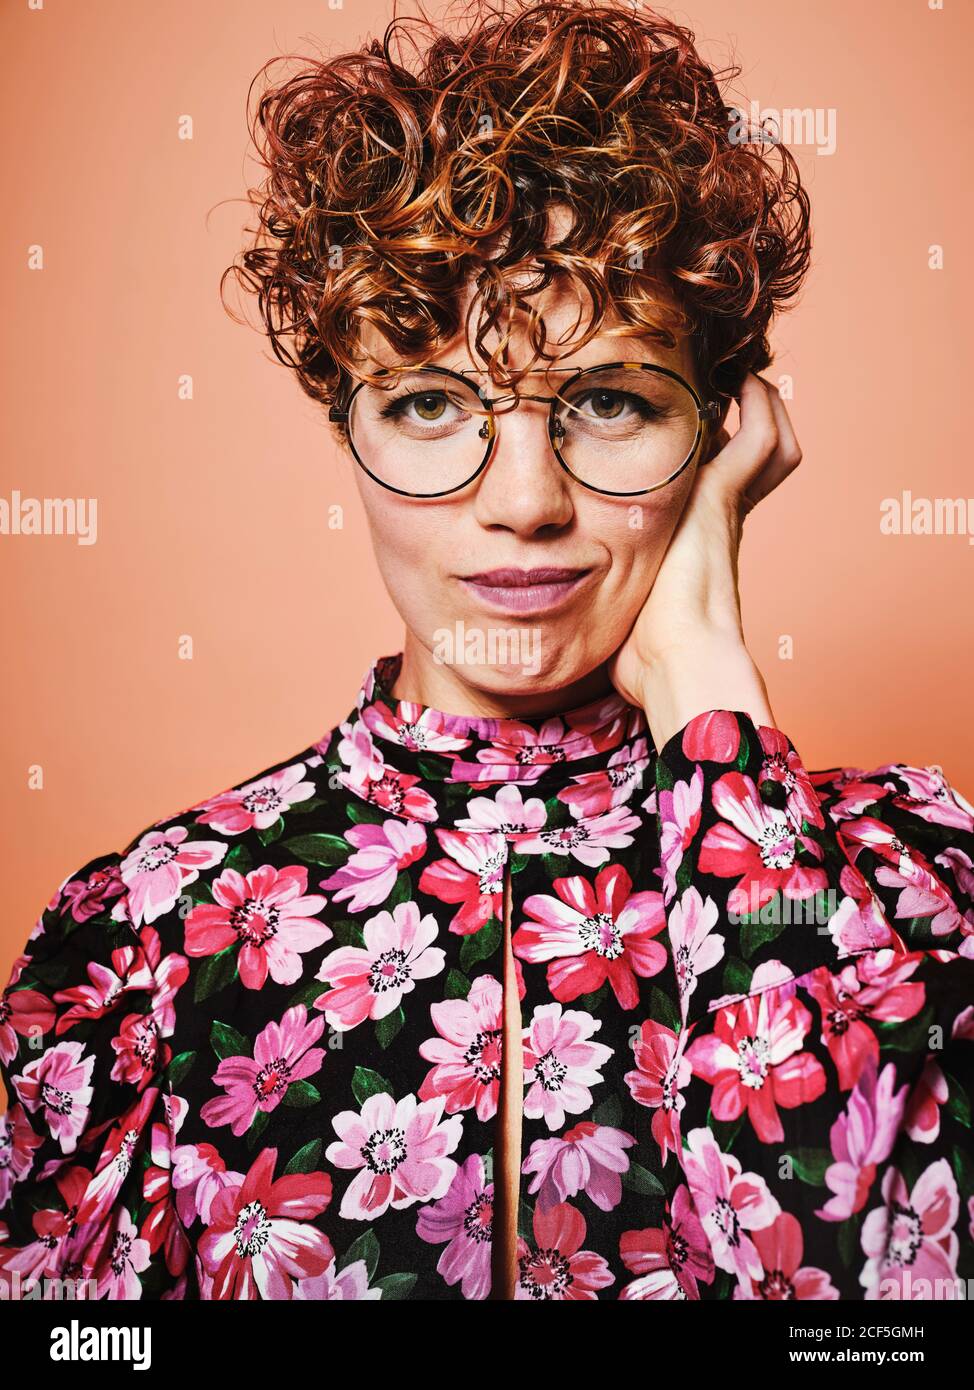 Nachdenklich zweifelhaft schöne lockige behaarte Weibchen in trendigen Brillen und Stilvolle bunte Bluse mit floralem Ornament Blick auf Kamera gegen Rosa Hintergrund Stockfoto